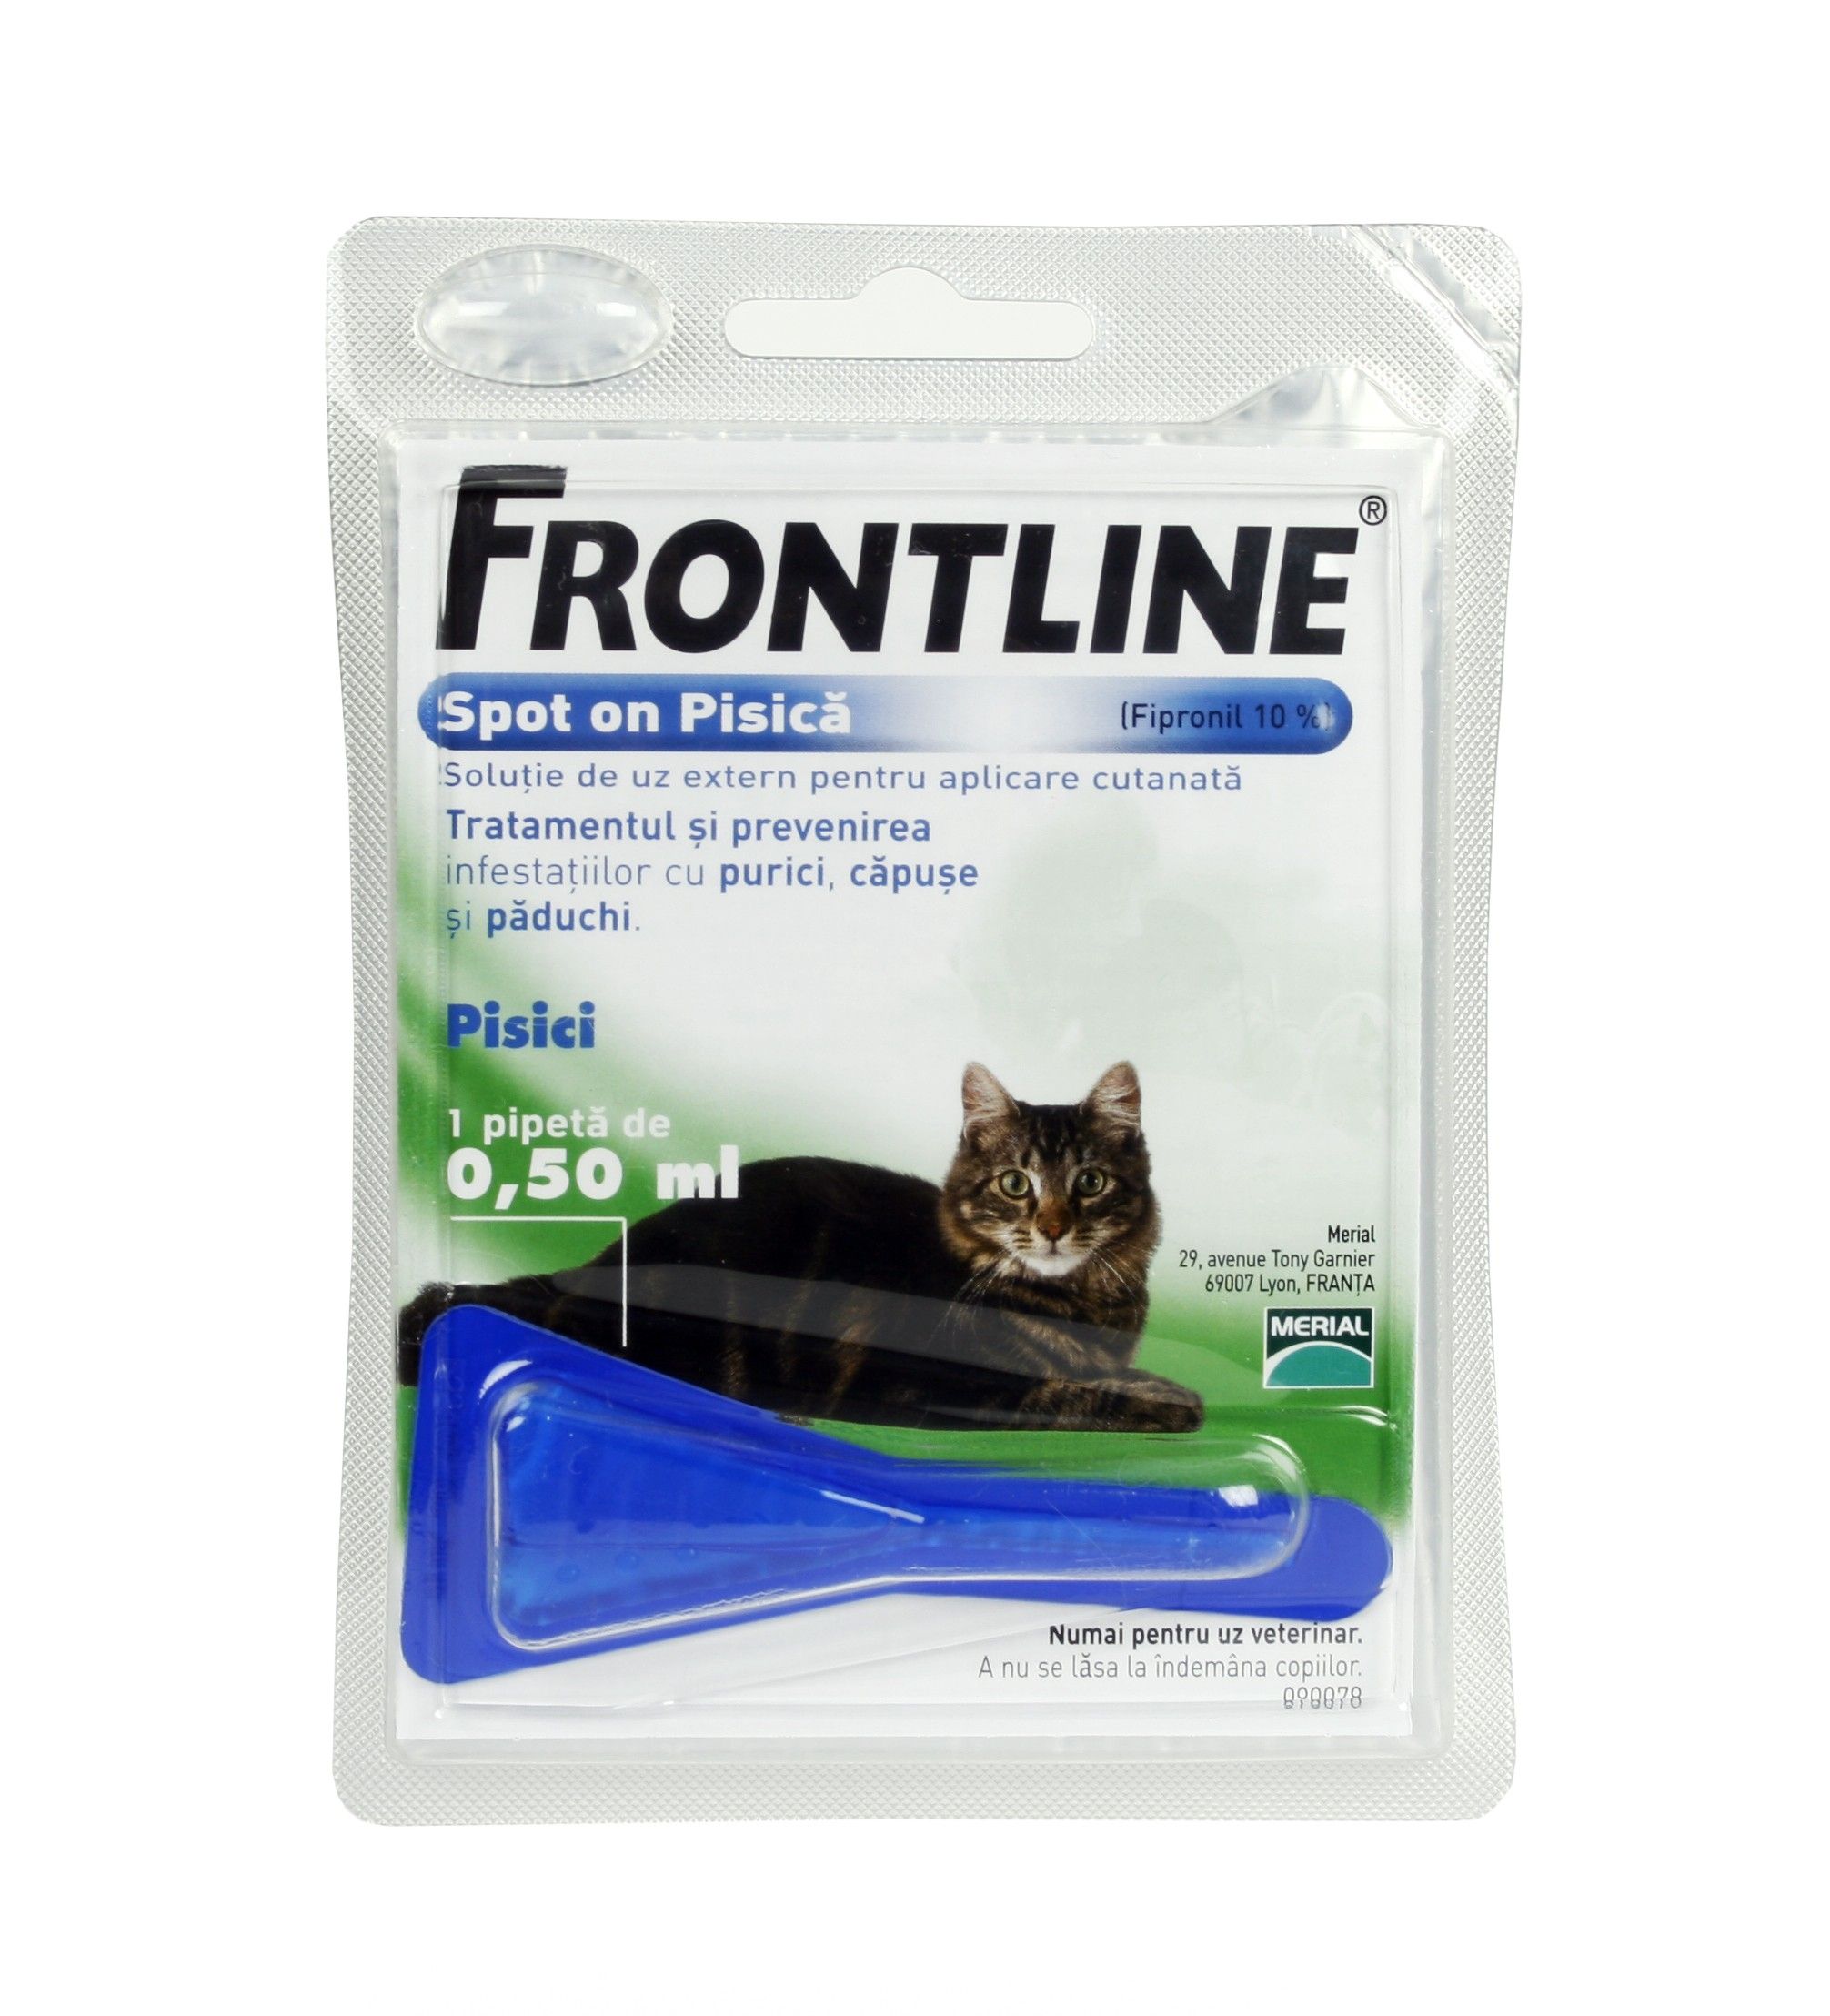 Frontline Spot On Pisica – 1 Pipeta Antiparazitara